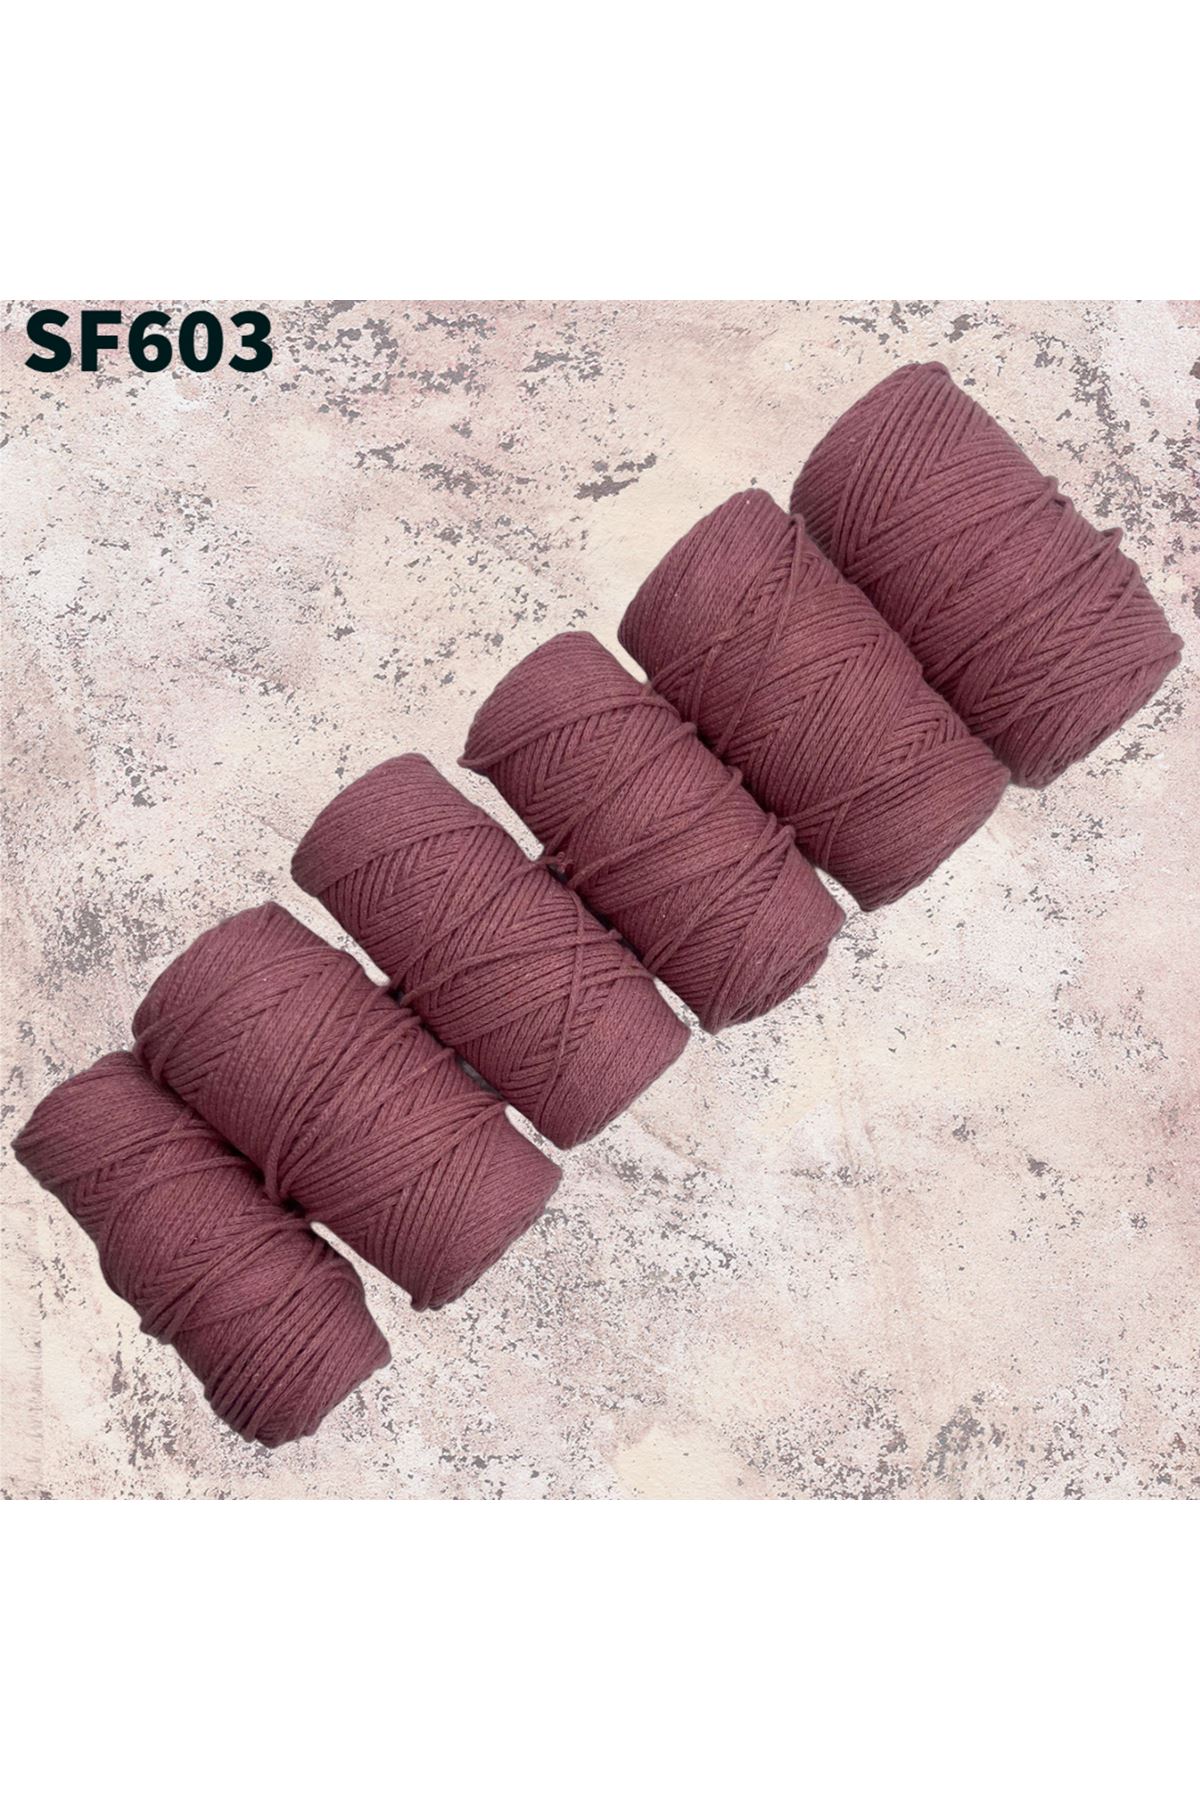 Stok Fazlası Cotton Makrome Gülkurusu 1000 Gram SF603